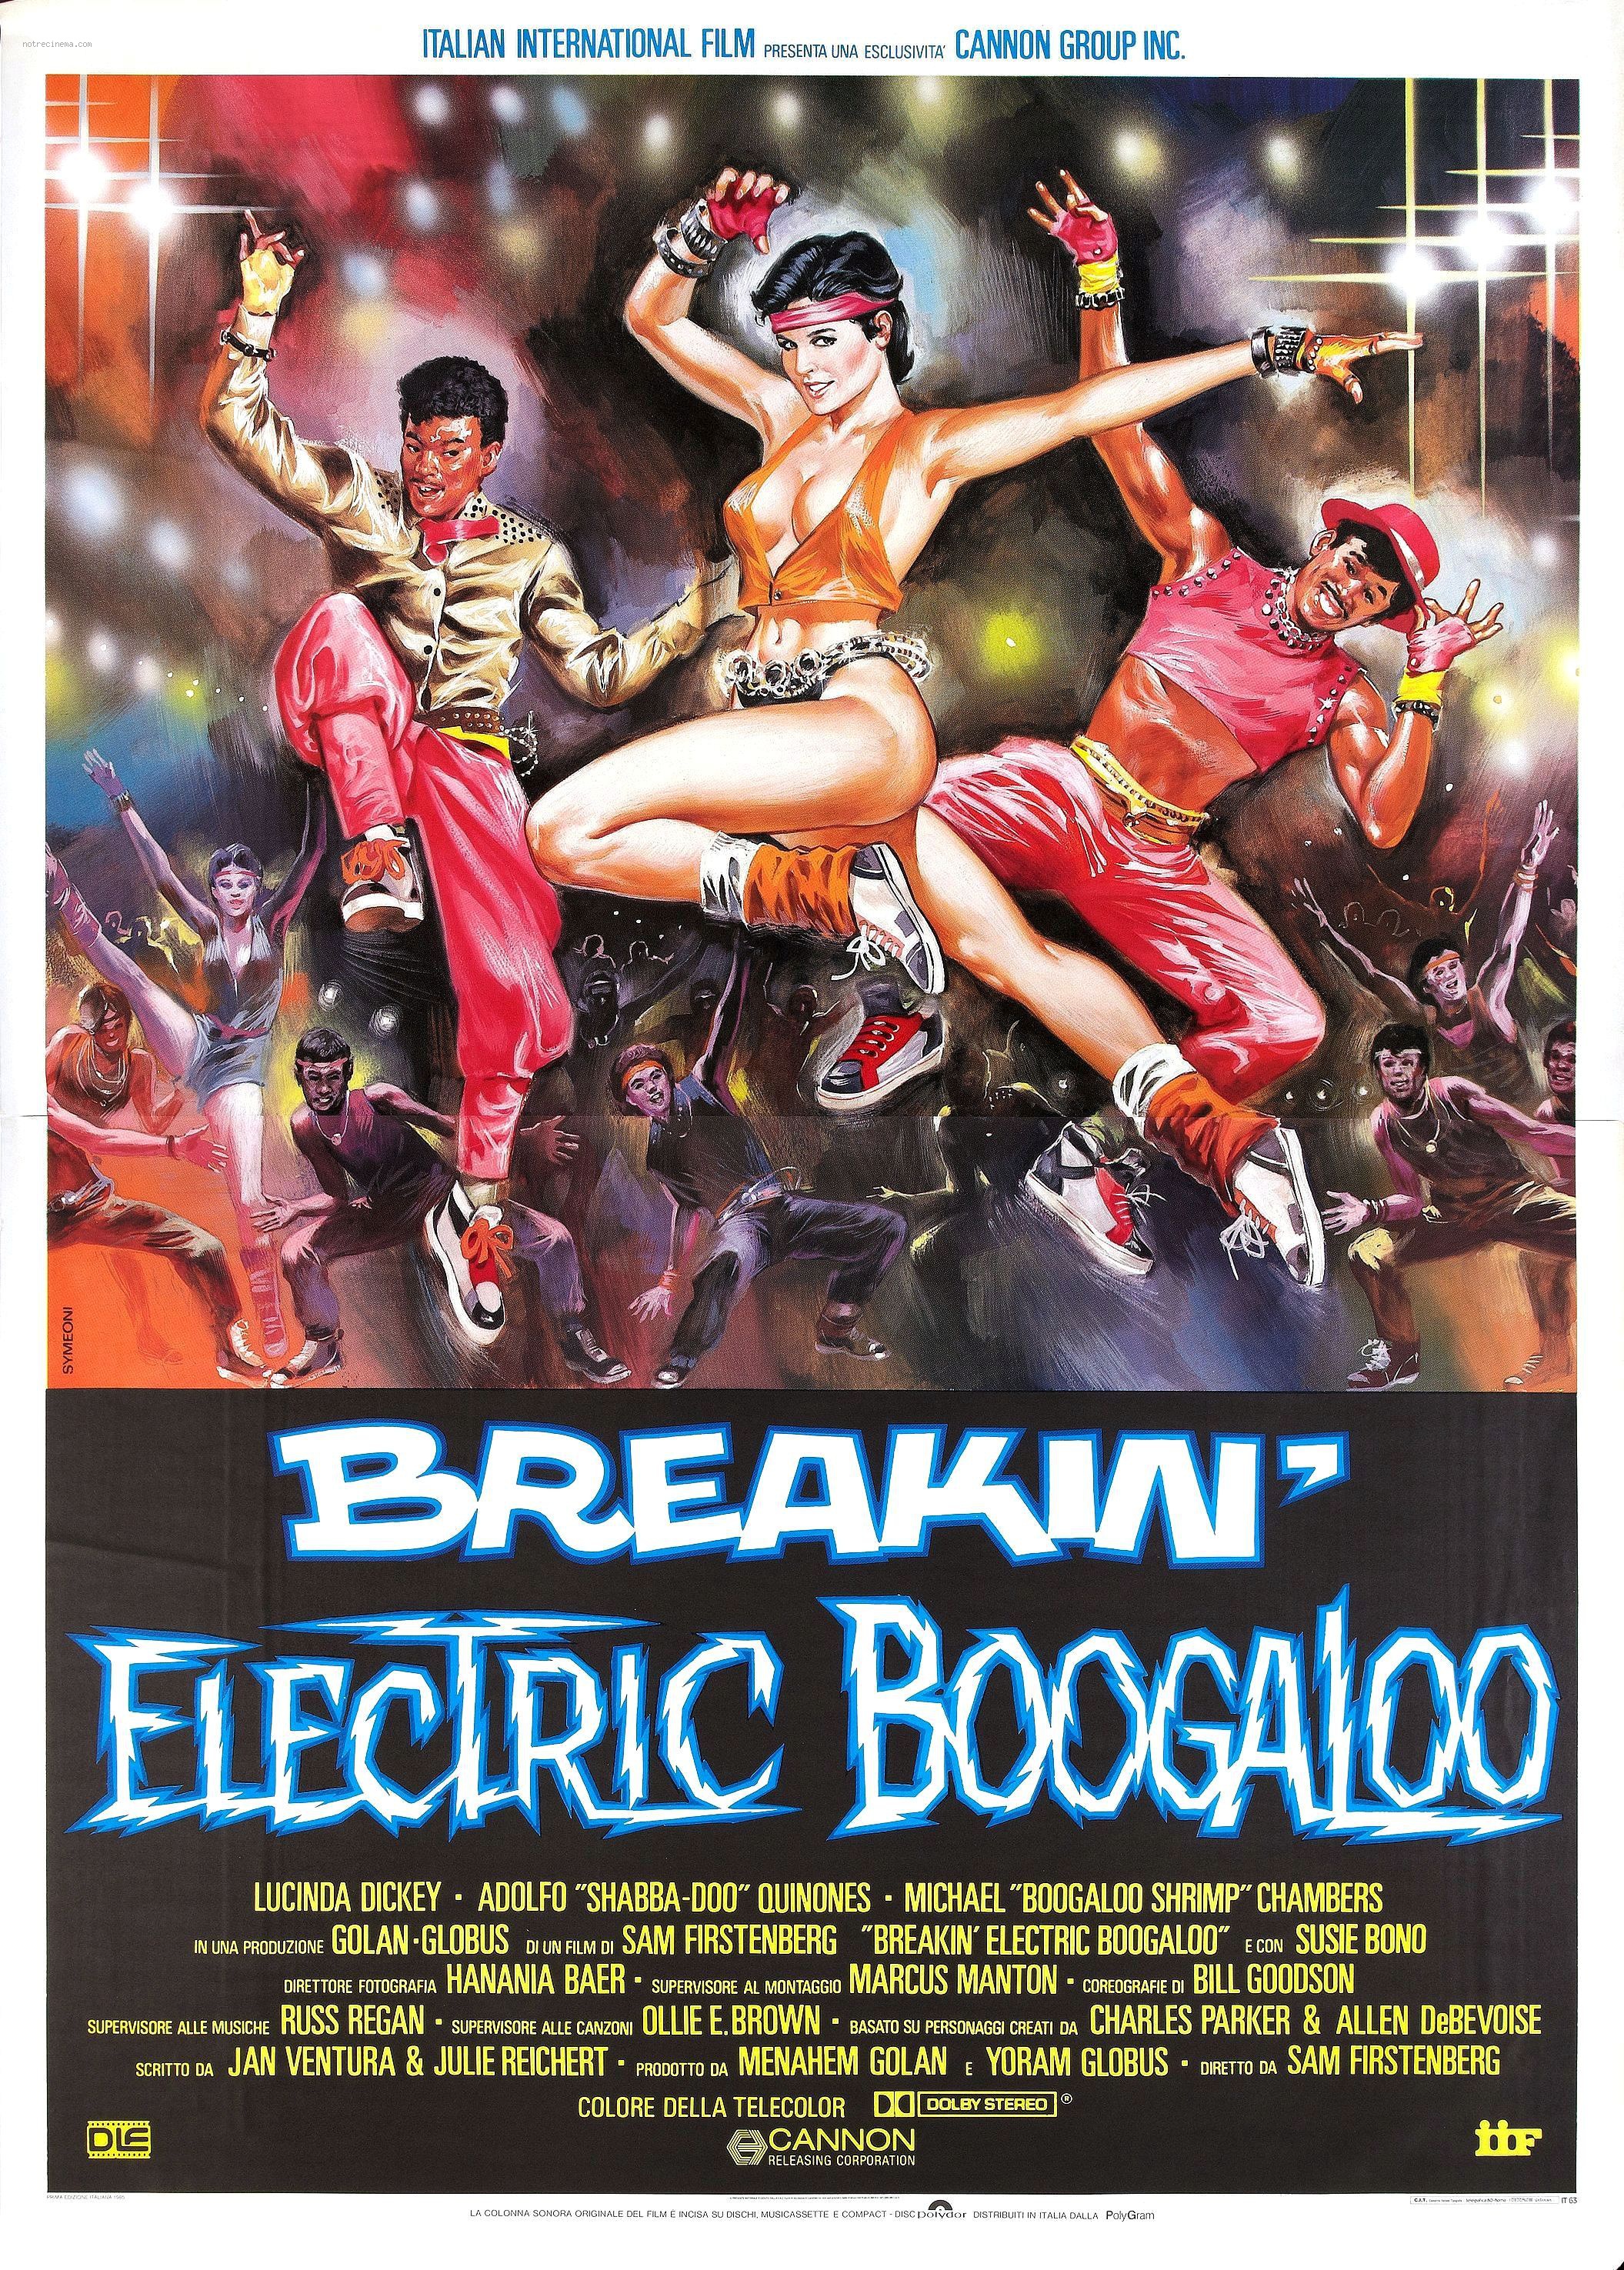 affiche du film Breakstreet 2 Electric Boogaloo